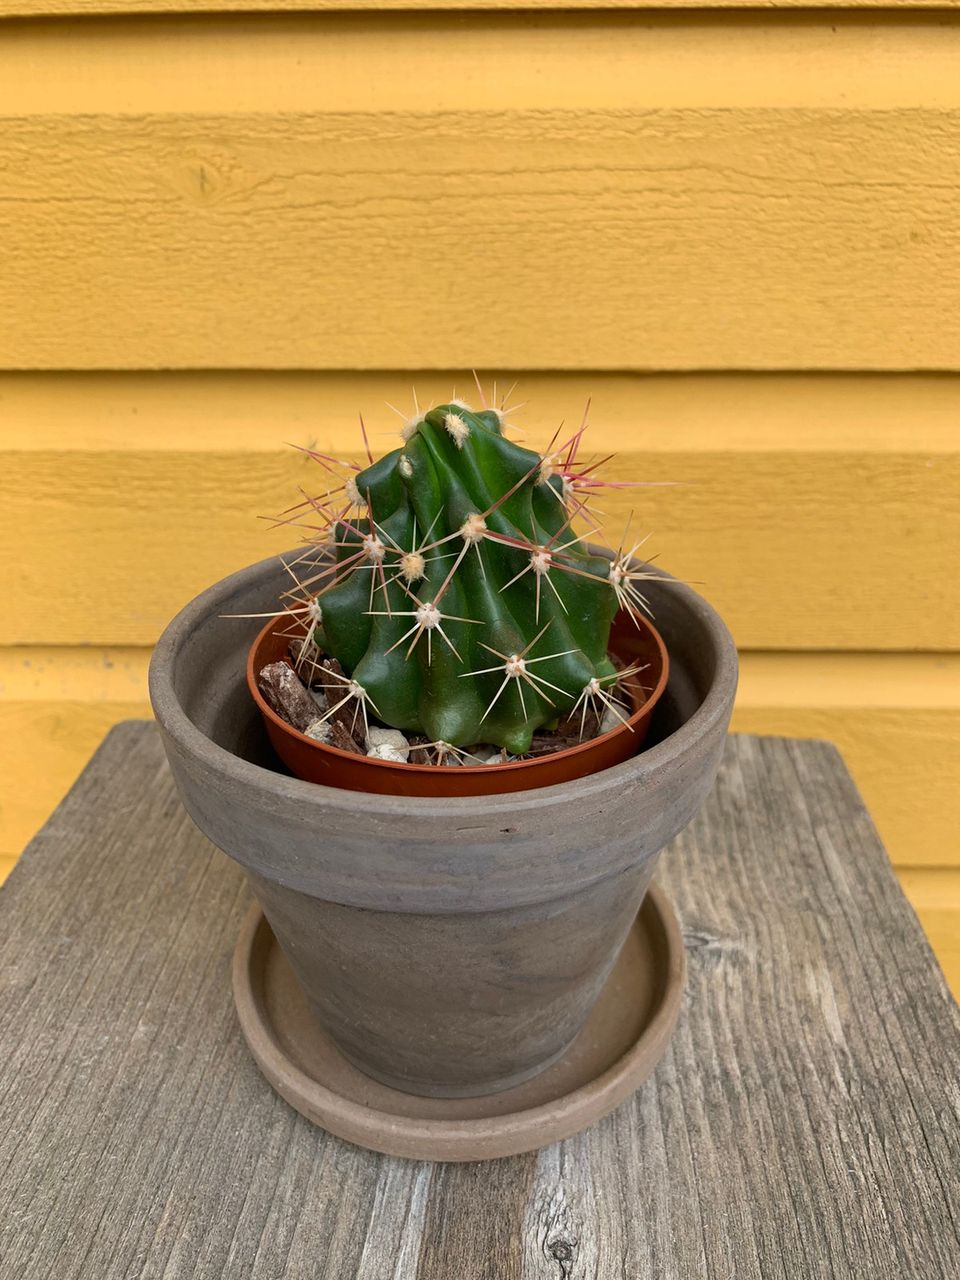 Devil’s tongue cactus /Ferocactus latispinus